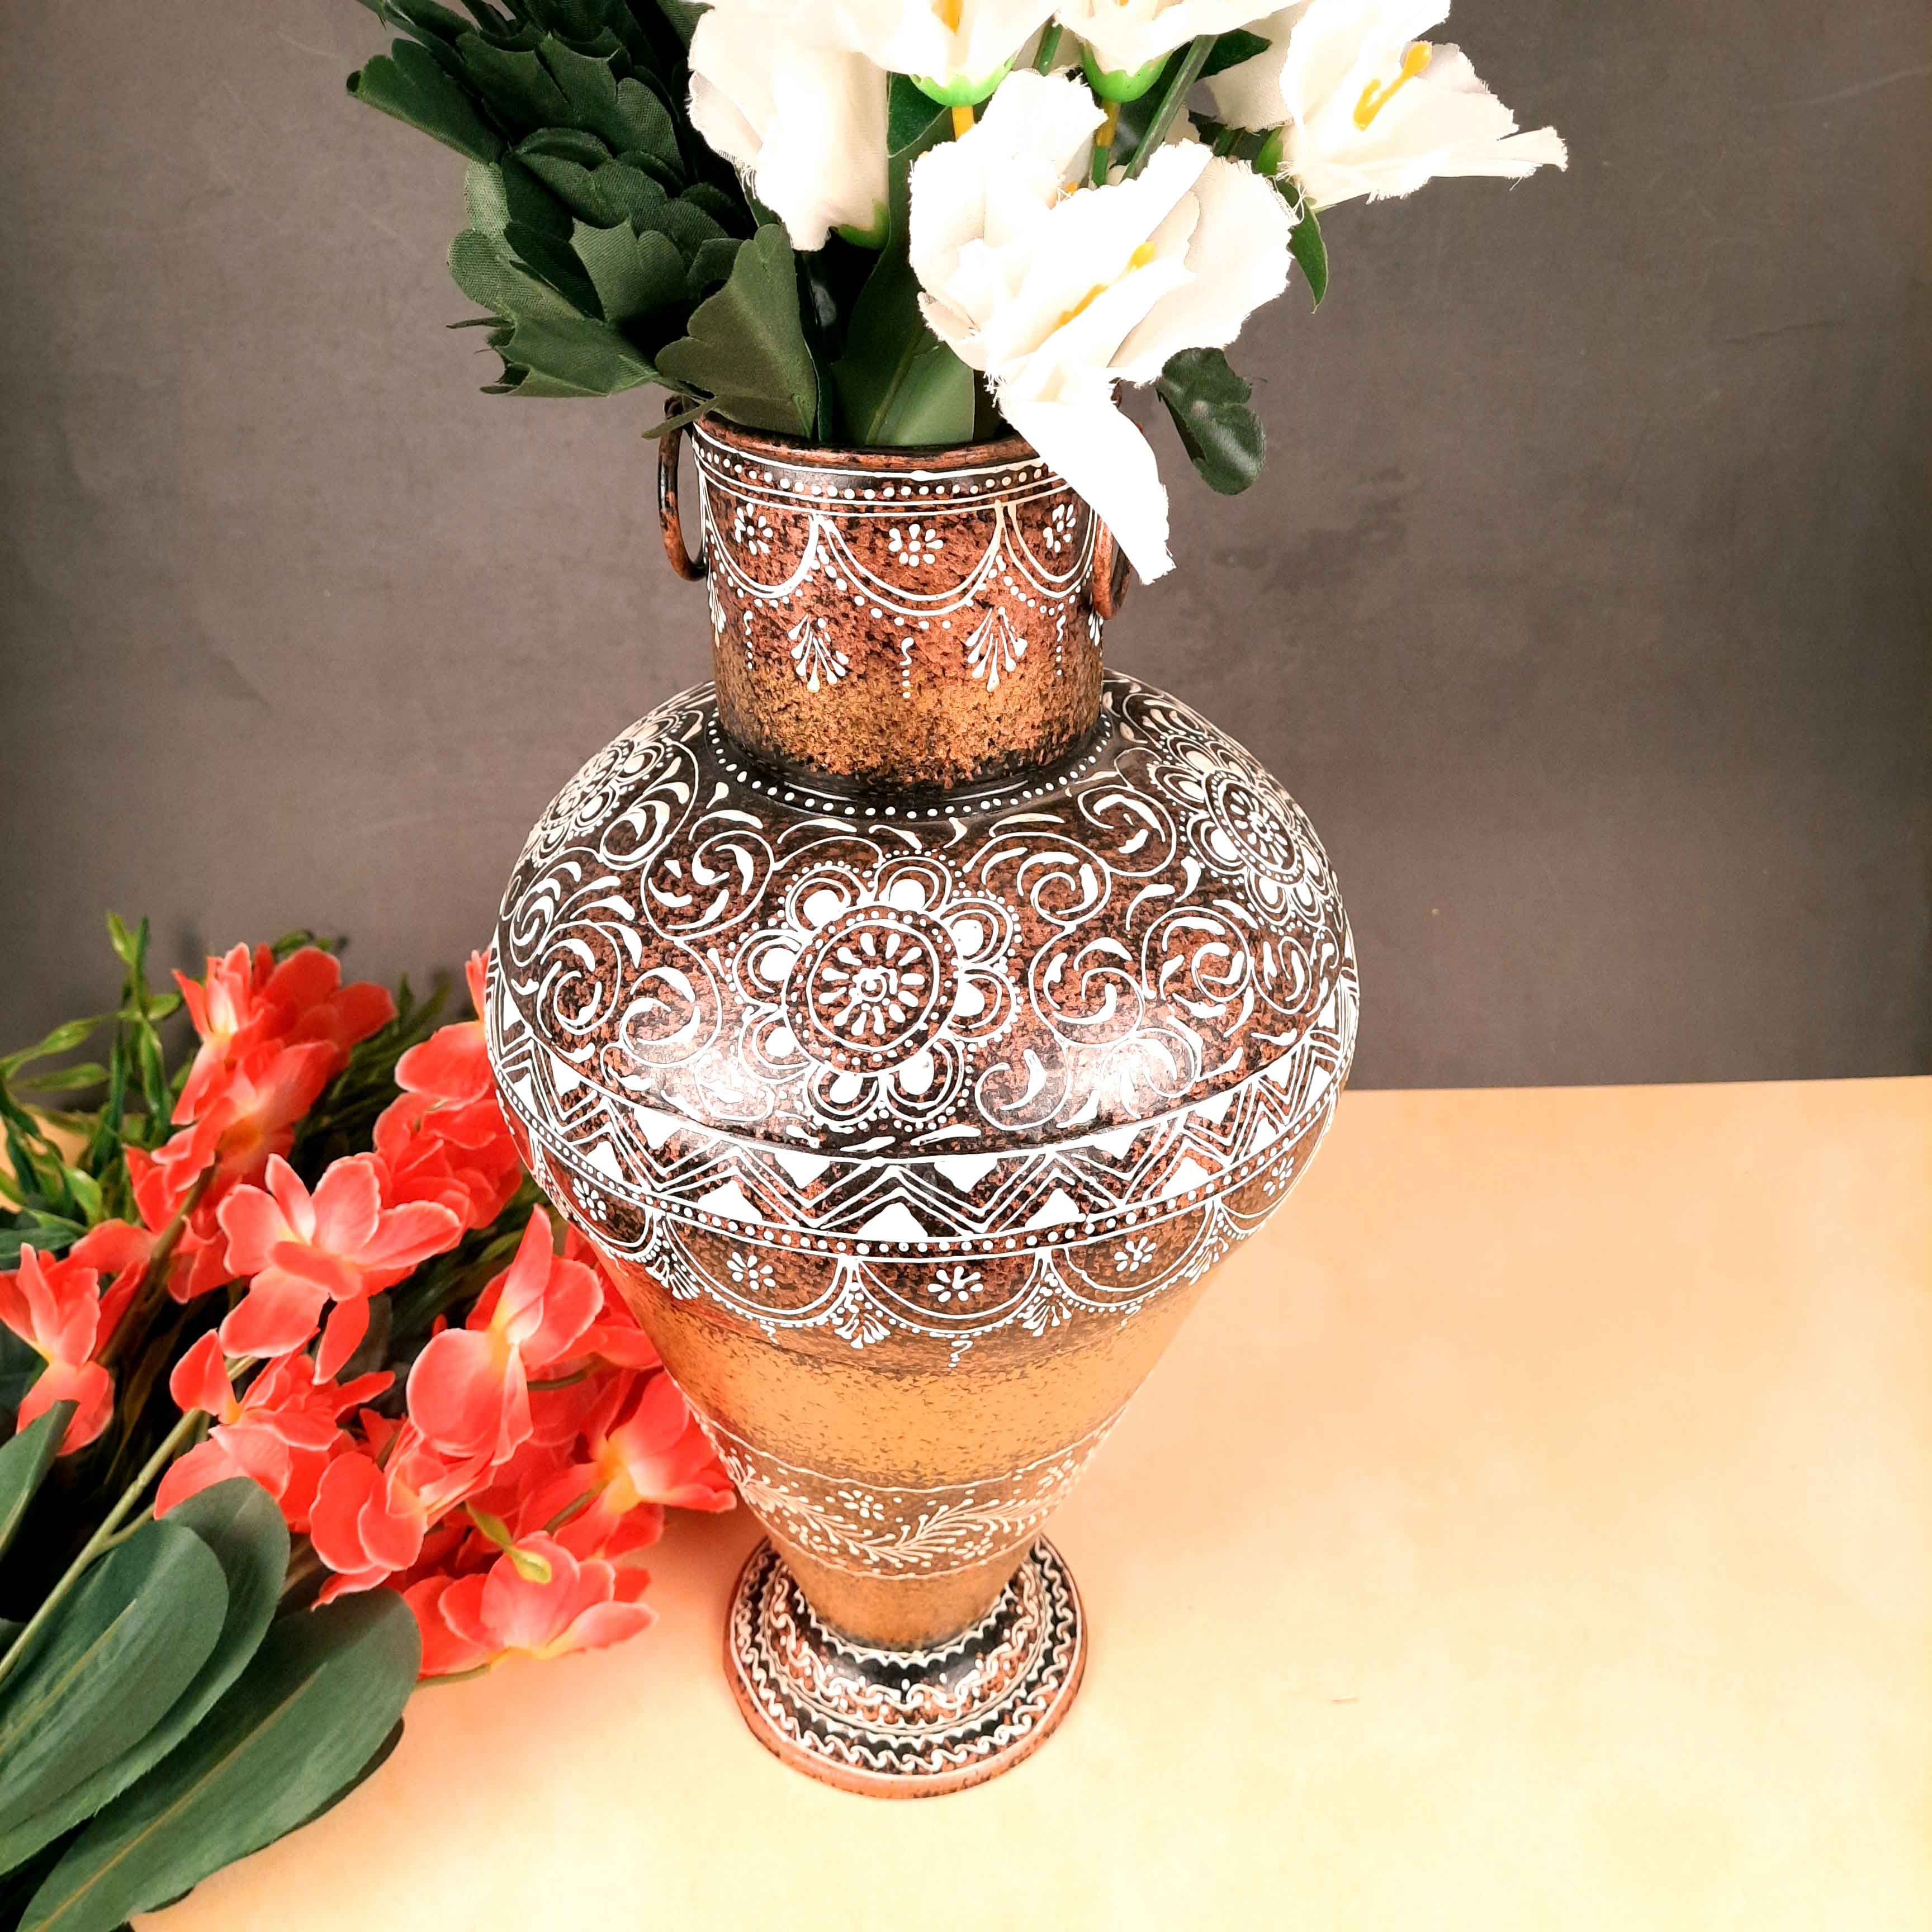 Big Flower Vase - Metal Vase for Corners - for Living Room, Home Decor & Entrance - 16 Inch - Apkamart